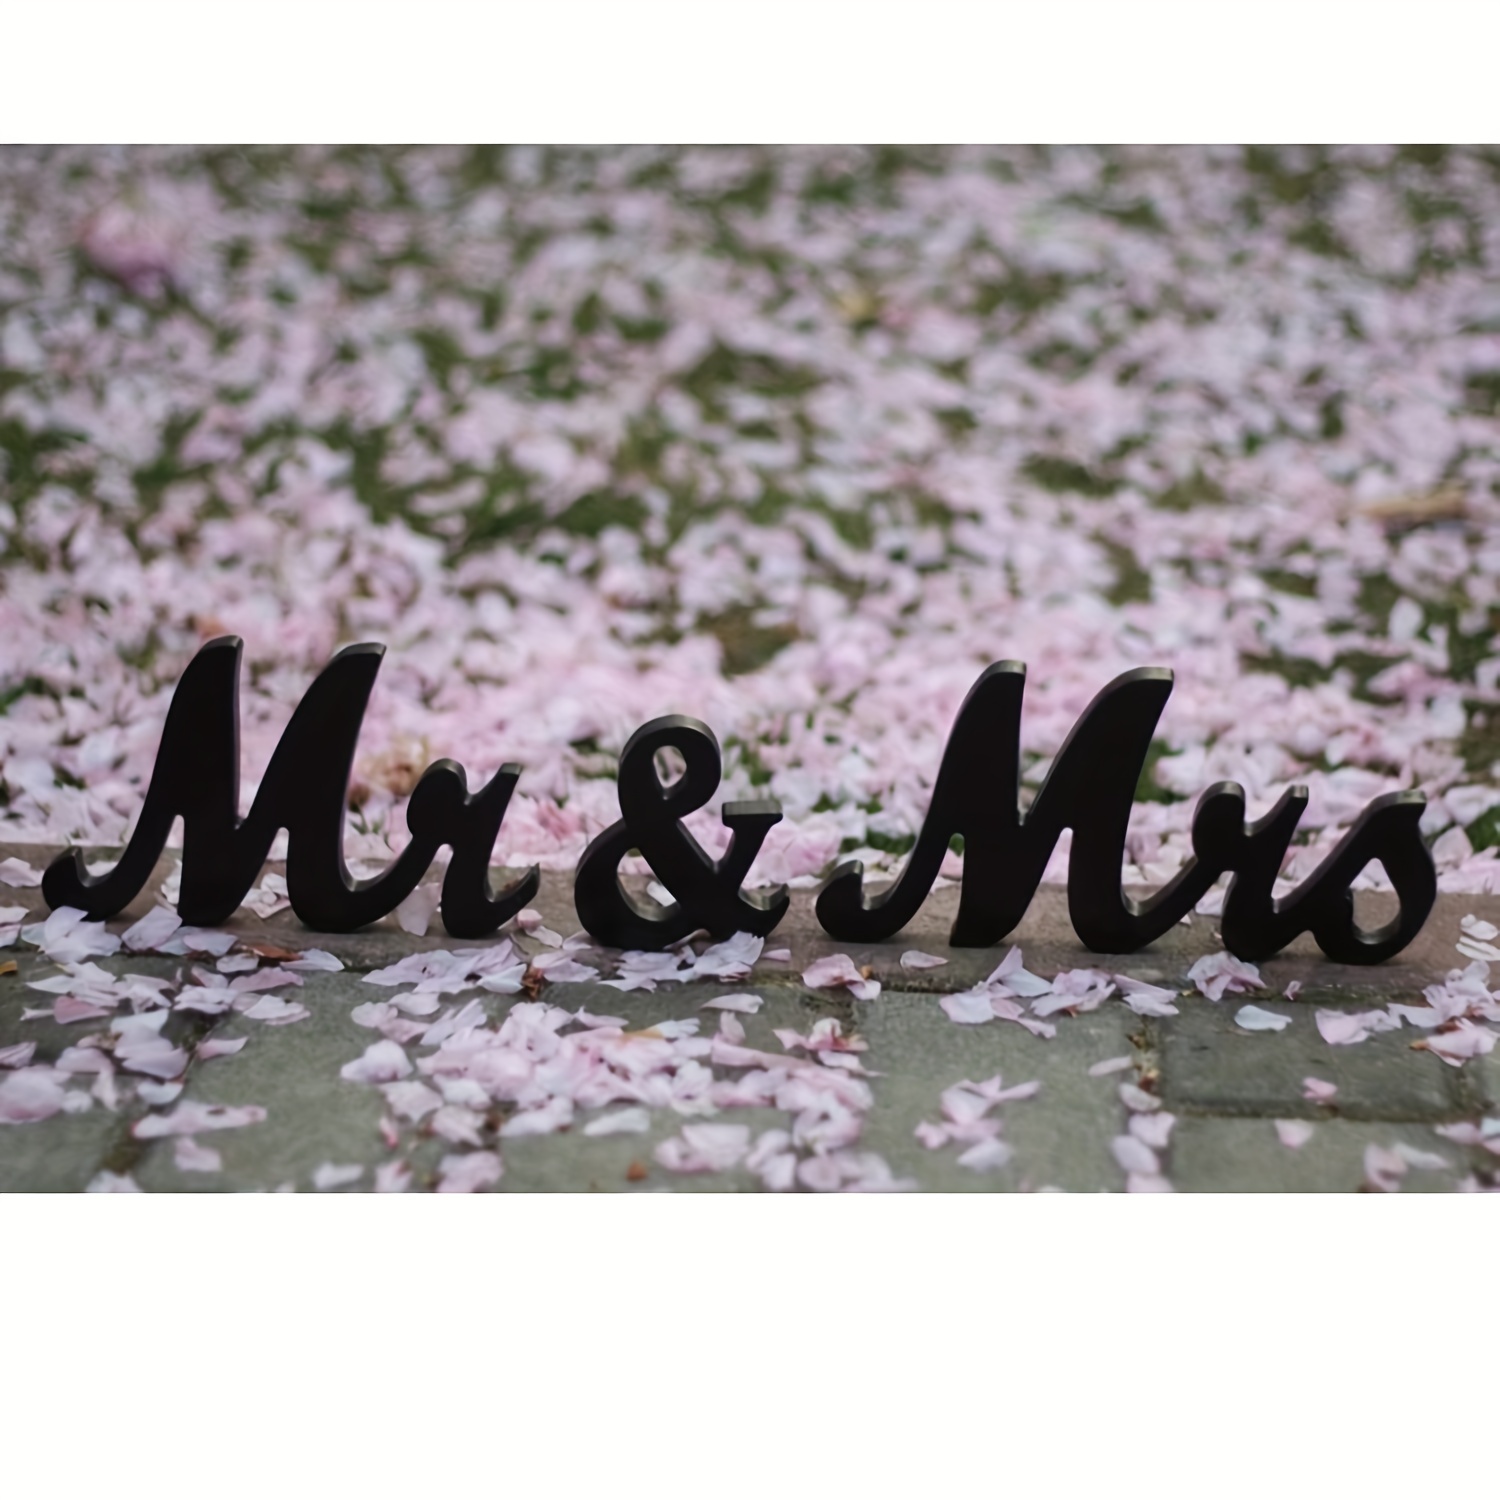 letras de madera grandes decorativas MR & MRS decoracion de boda